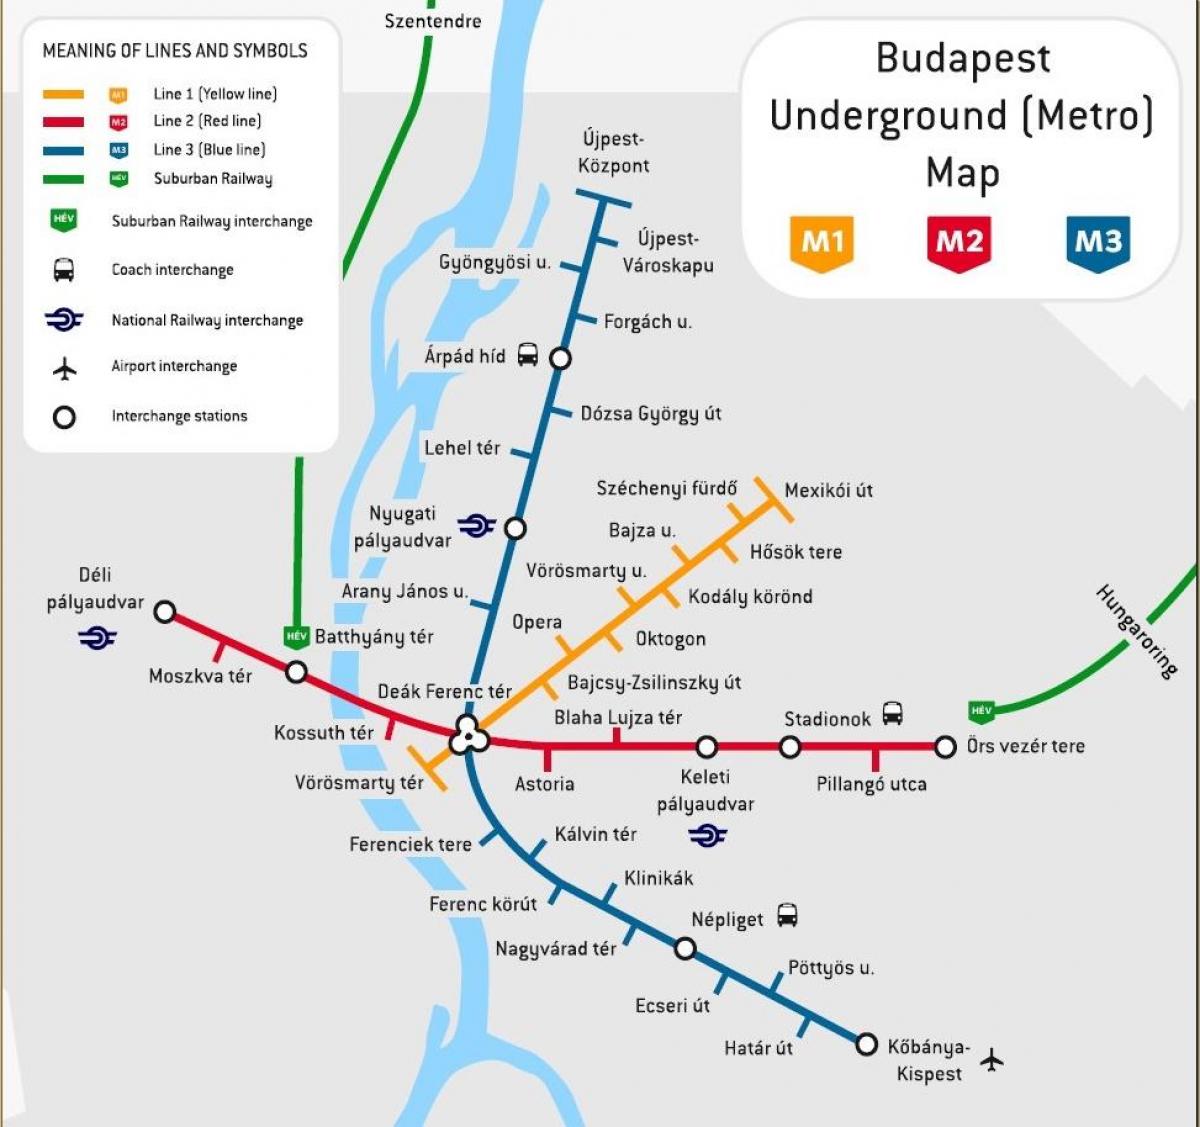 залізничний вокзал Будапешта на карті 